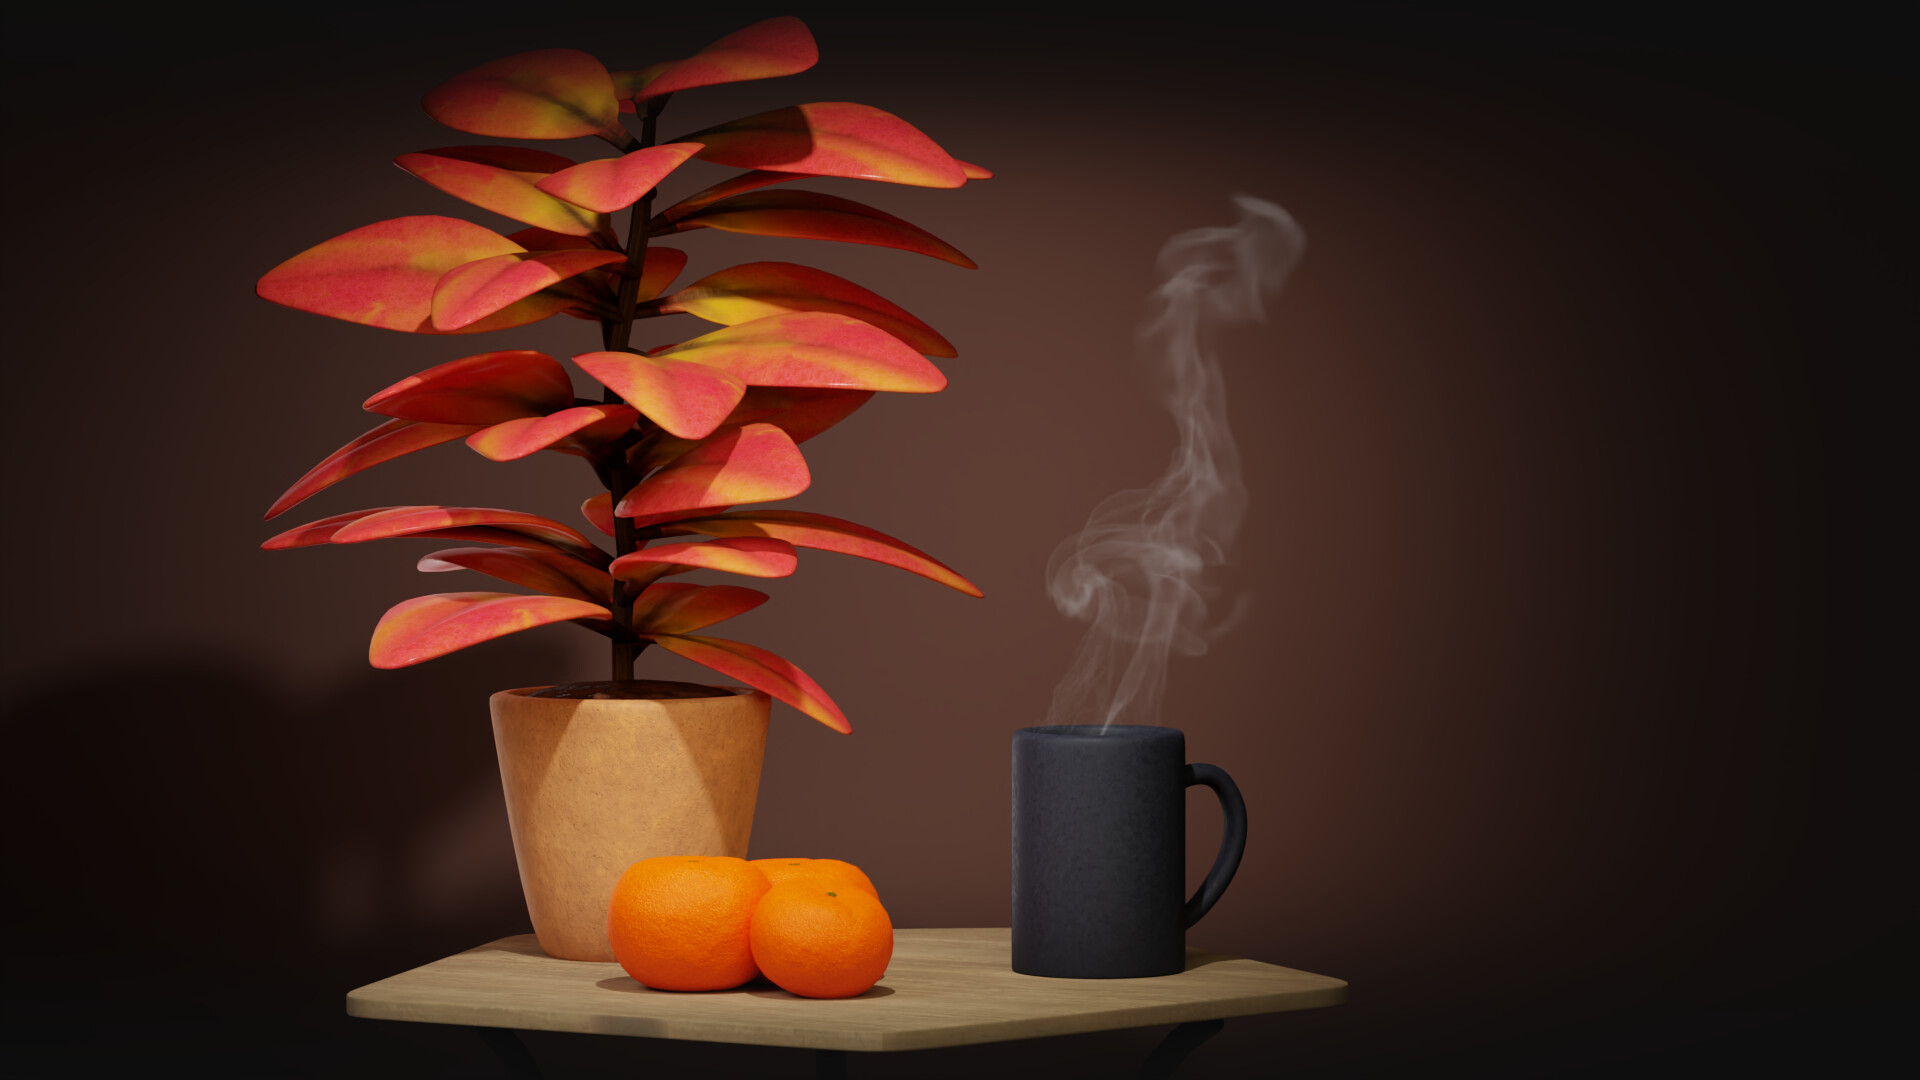 Hot Chocolate and Mandarines